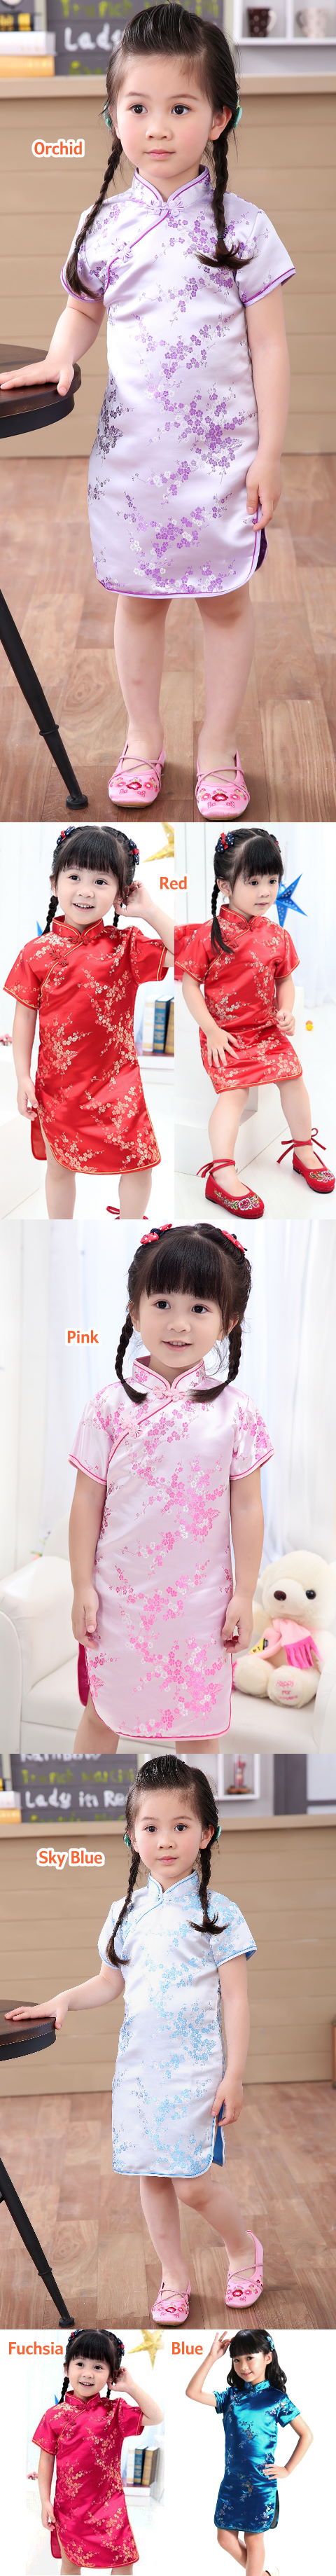 Girl's Plumb Blossom Cheongsam Dress (RM)